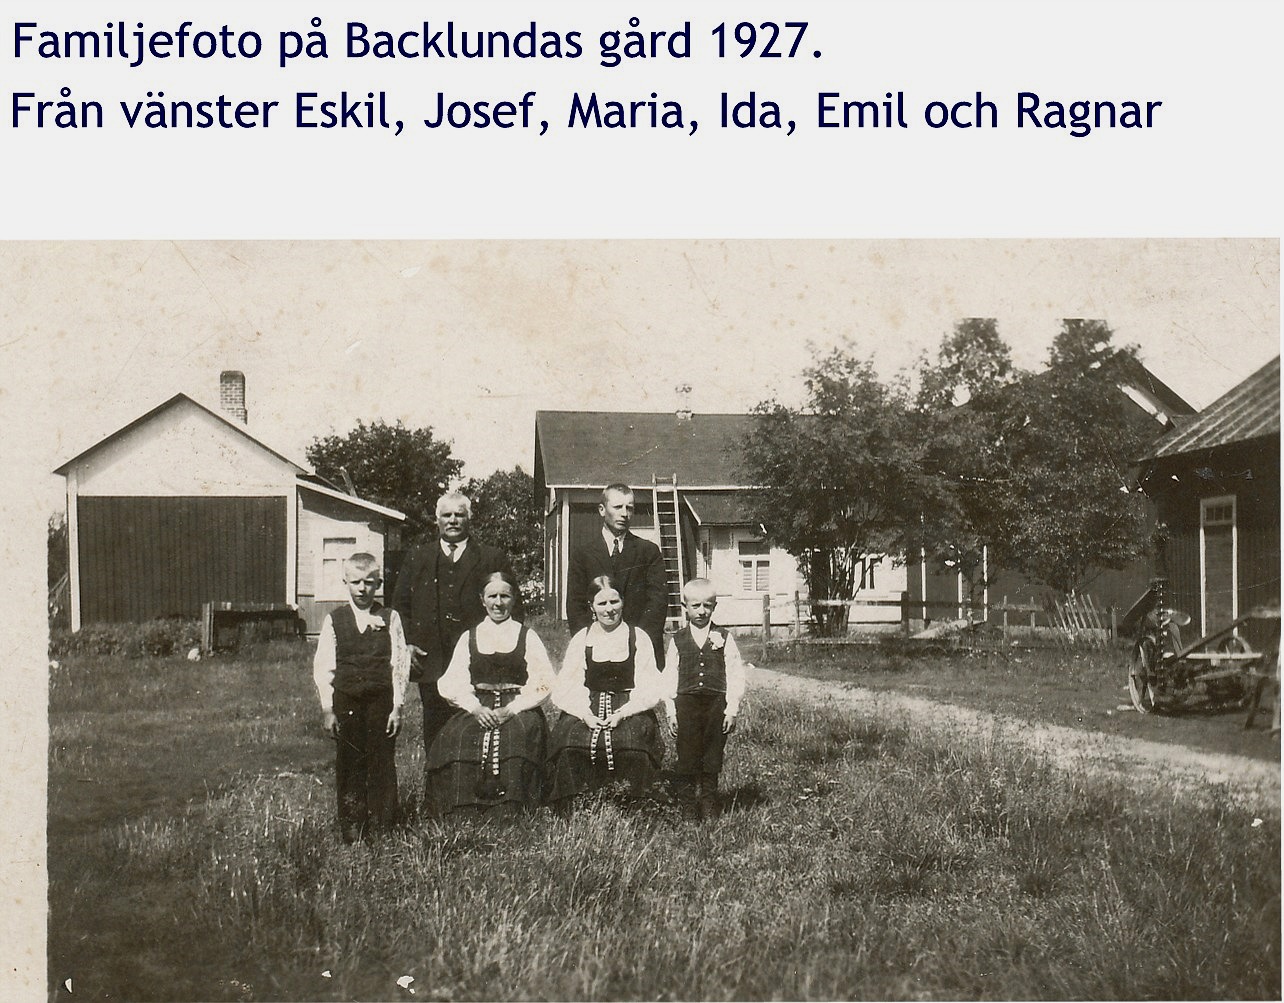 Familjefoto från 1927 med den gården i bakgrunden sådan den såg ut före renoveringen i början på 50-talet.